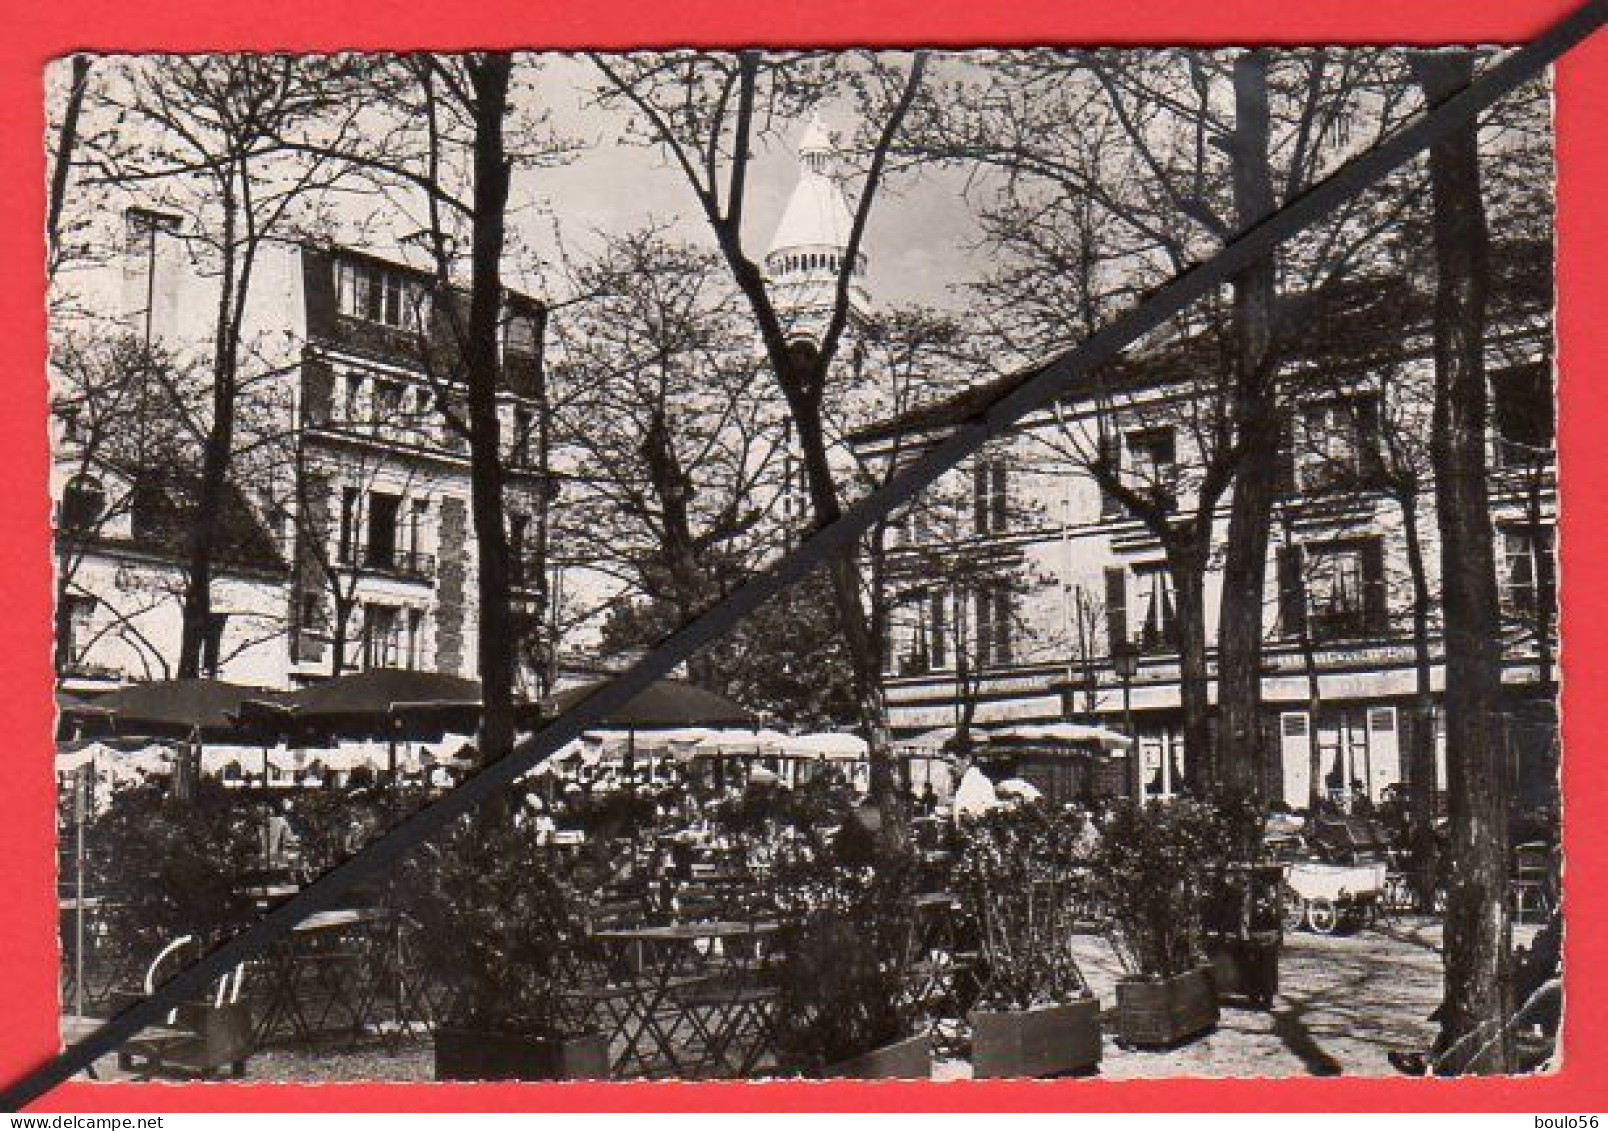 CPSM-(Lots -Vrac)5-99-9Cartes-PARIS-la Tour EFFEL-1956-Monmartre Pl Du Tertre-1955.-Paris La Nuit.1957."1964.-1963.----- - 5 - 99 Cartes